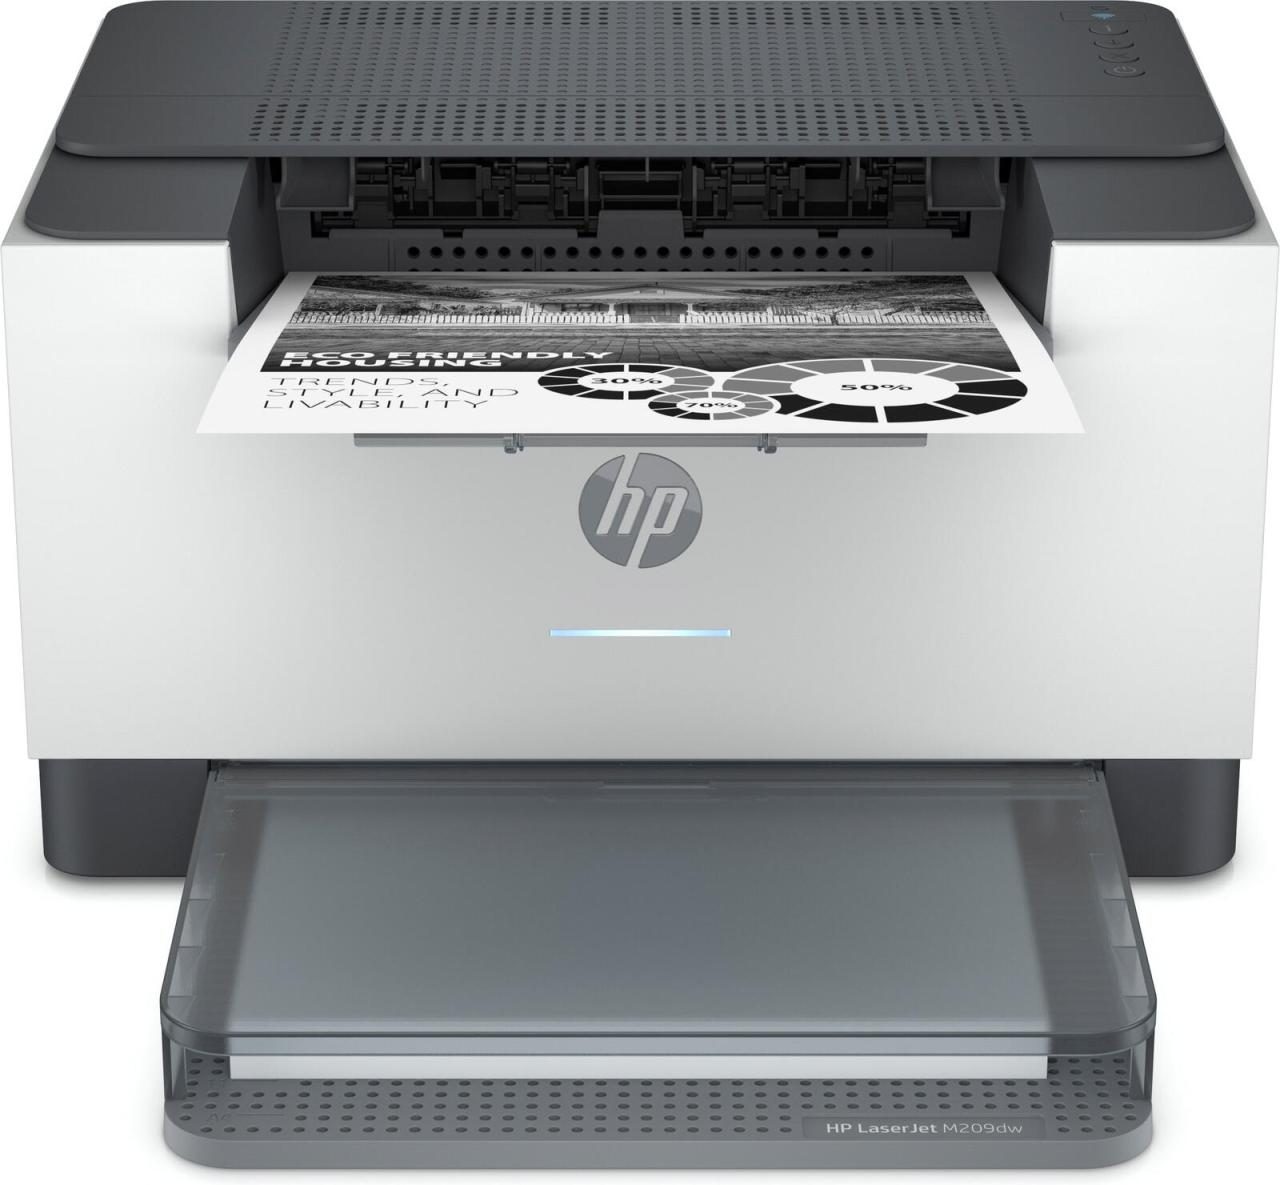 HP LaserJet M209dw Laserdrucker s/w von HP Inc.